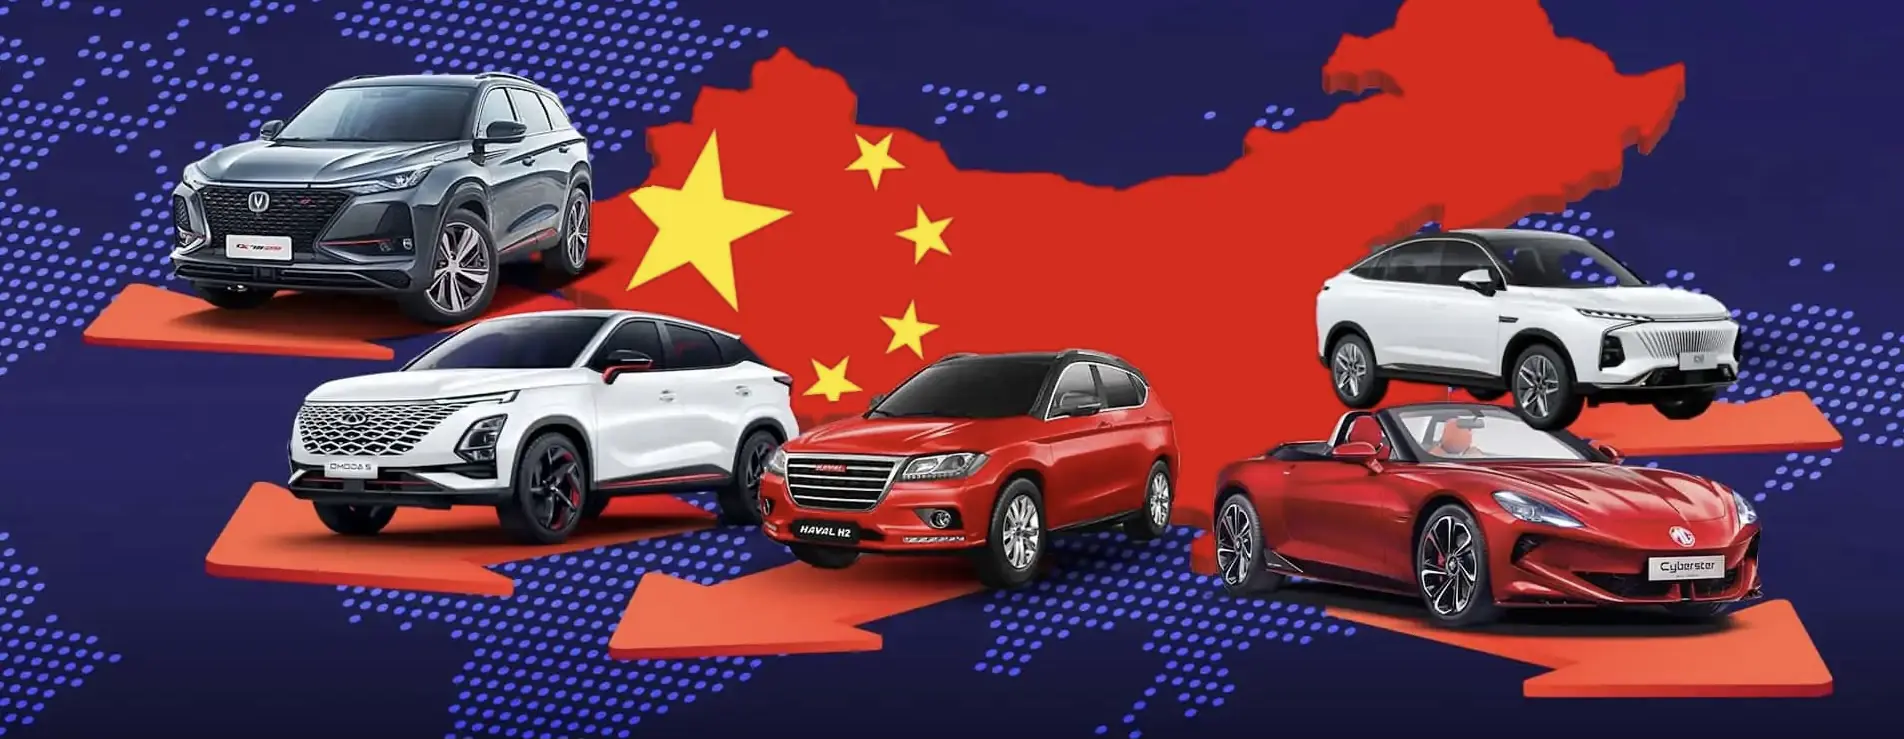 Китайские машины в России всех марок 2024 (с ценами и фото): Geely, Changan, Chery, Haval, Omoda. Самый большой гайд по всем китайским автомобилям на рынке